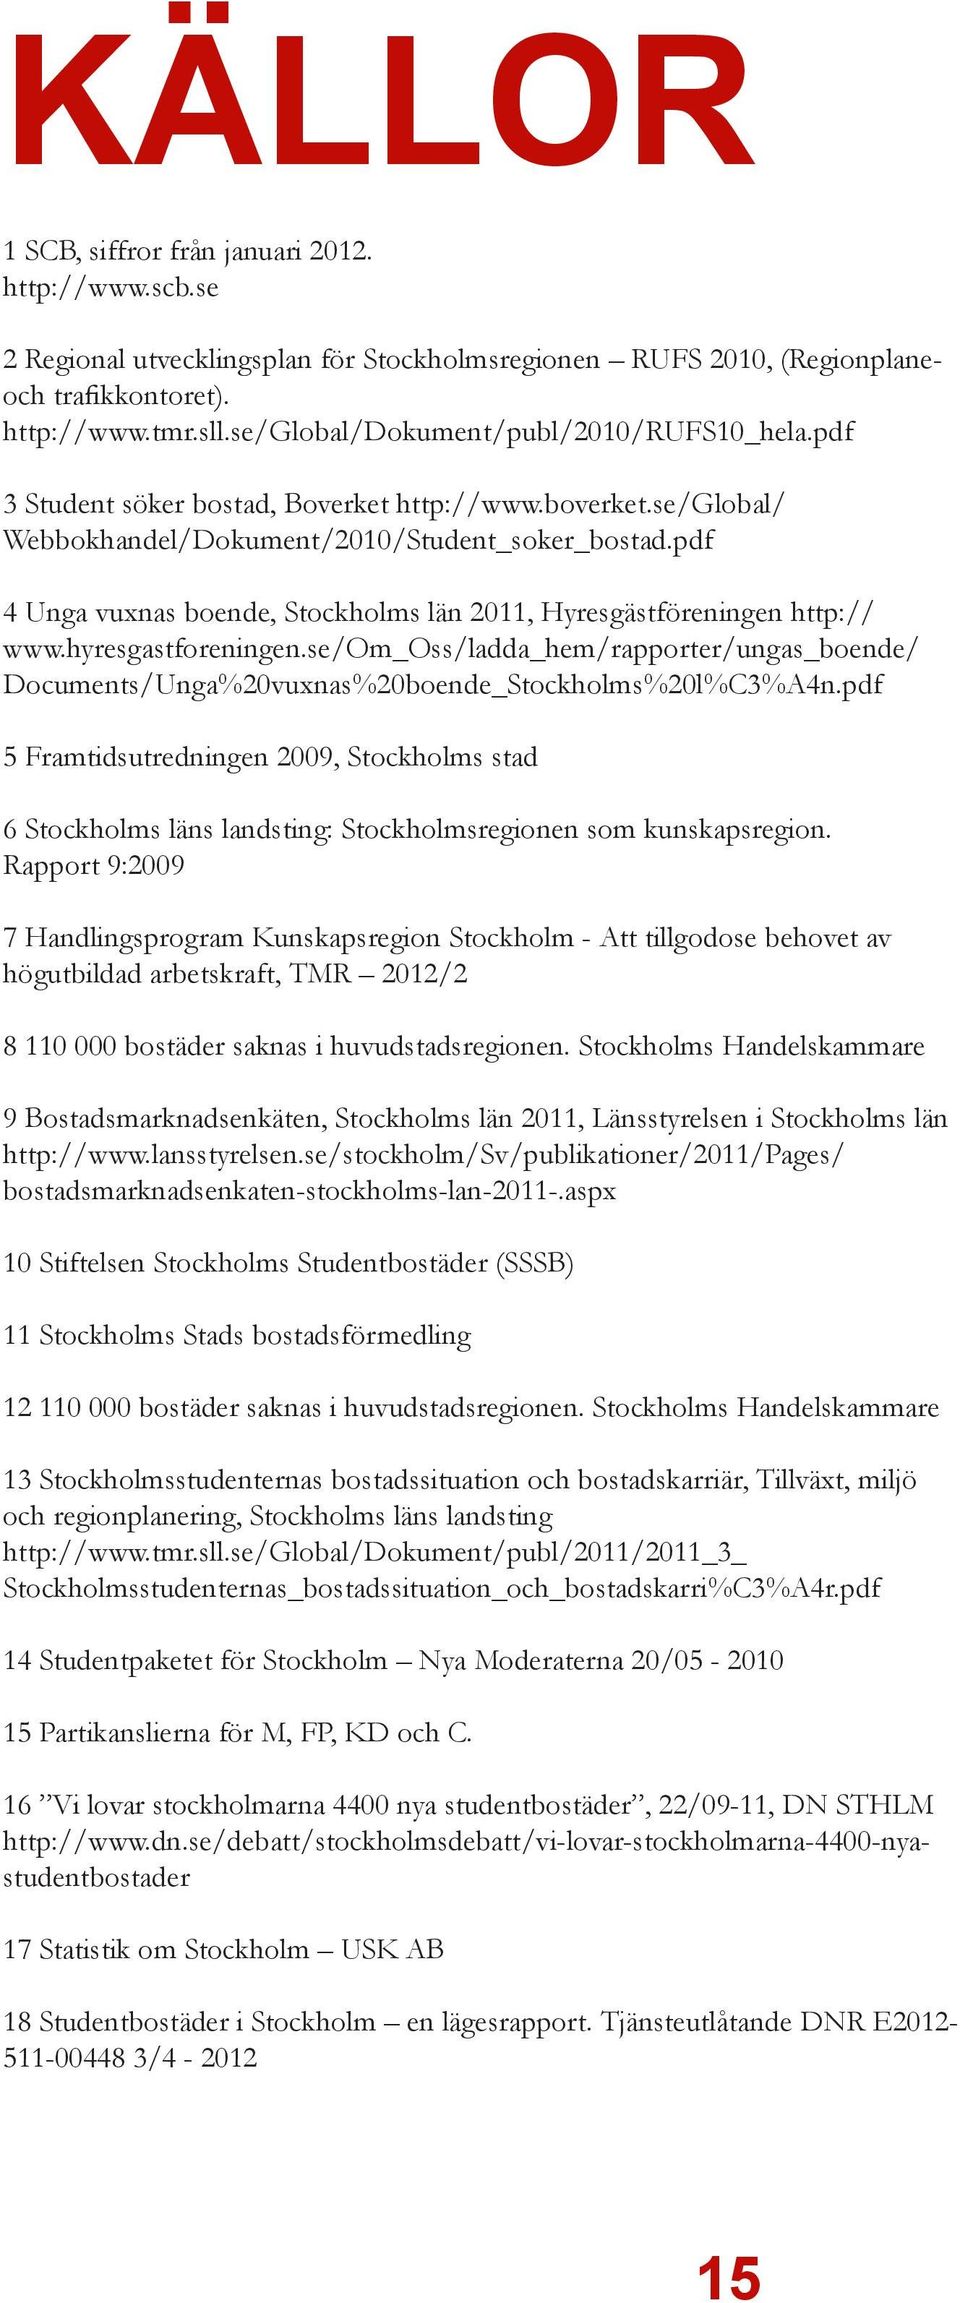 pdf 4 Unga vuxnas boende, Stockholms län 2011, Hyresgästföreningen http:// www.hyresgastforeningen.se/om_oss/ladda_hem/rapporter/ungas_boende/ Documents/Unga%20vuxnas%20boende_Stockholms%20l%C3%A4n.